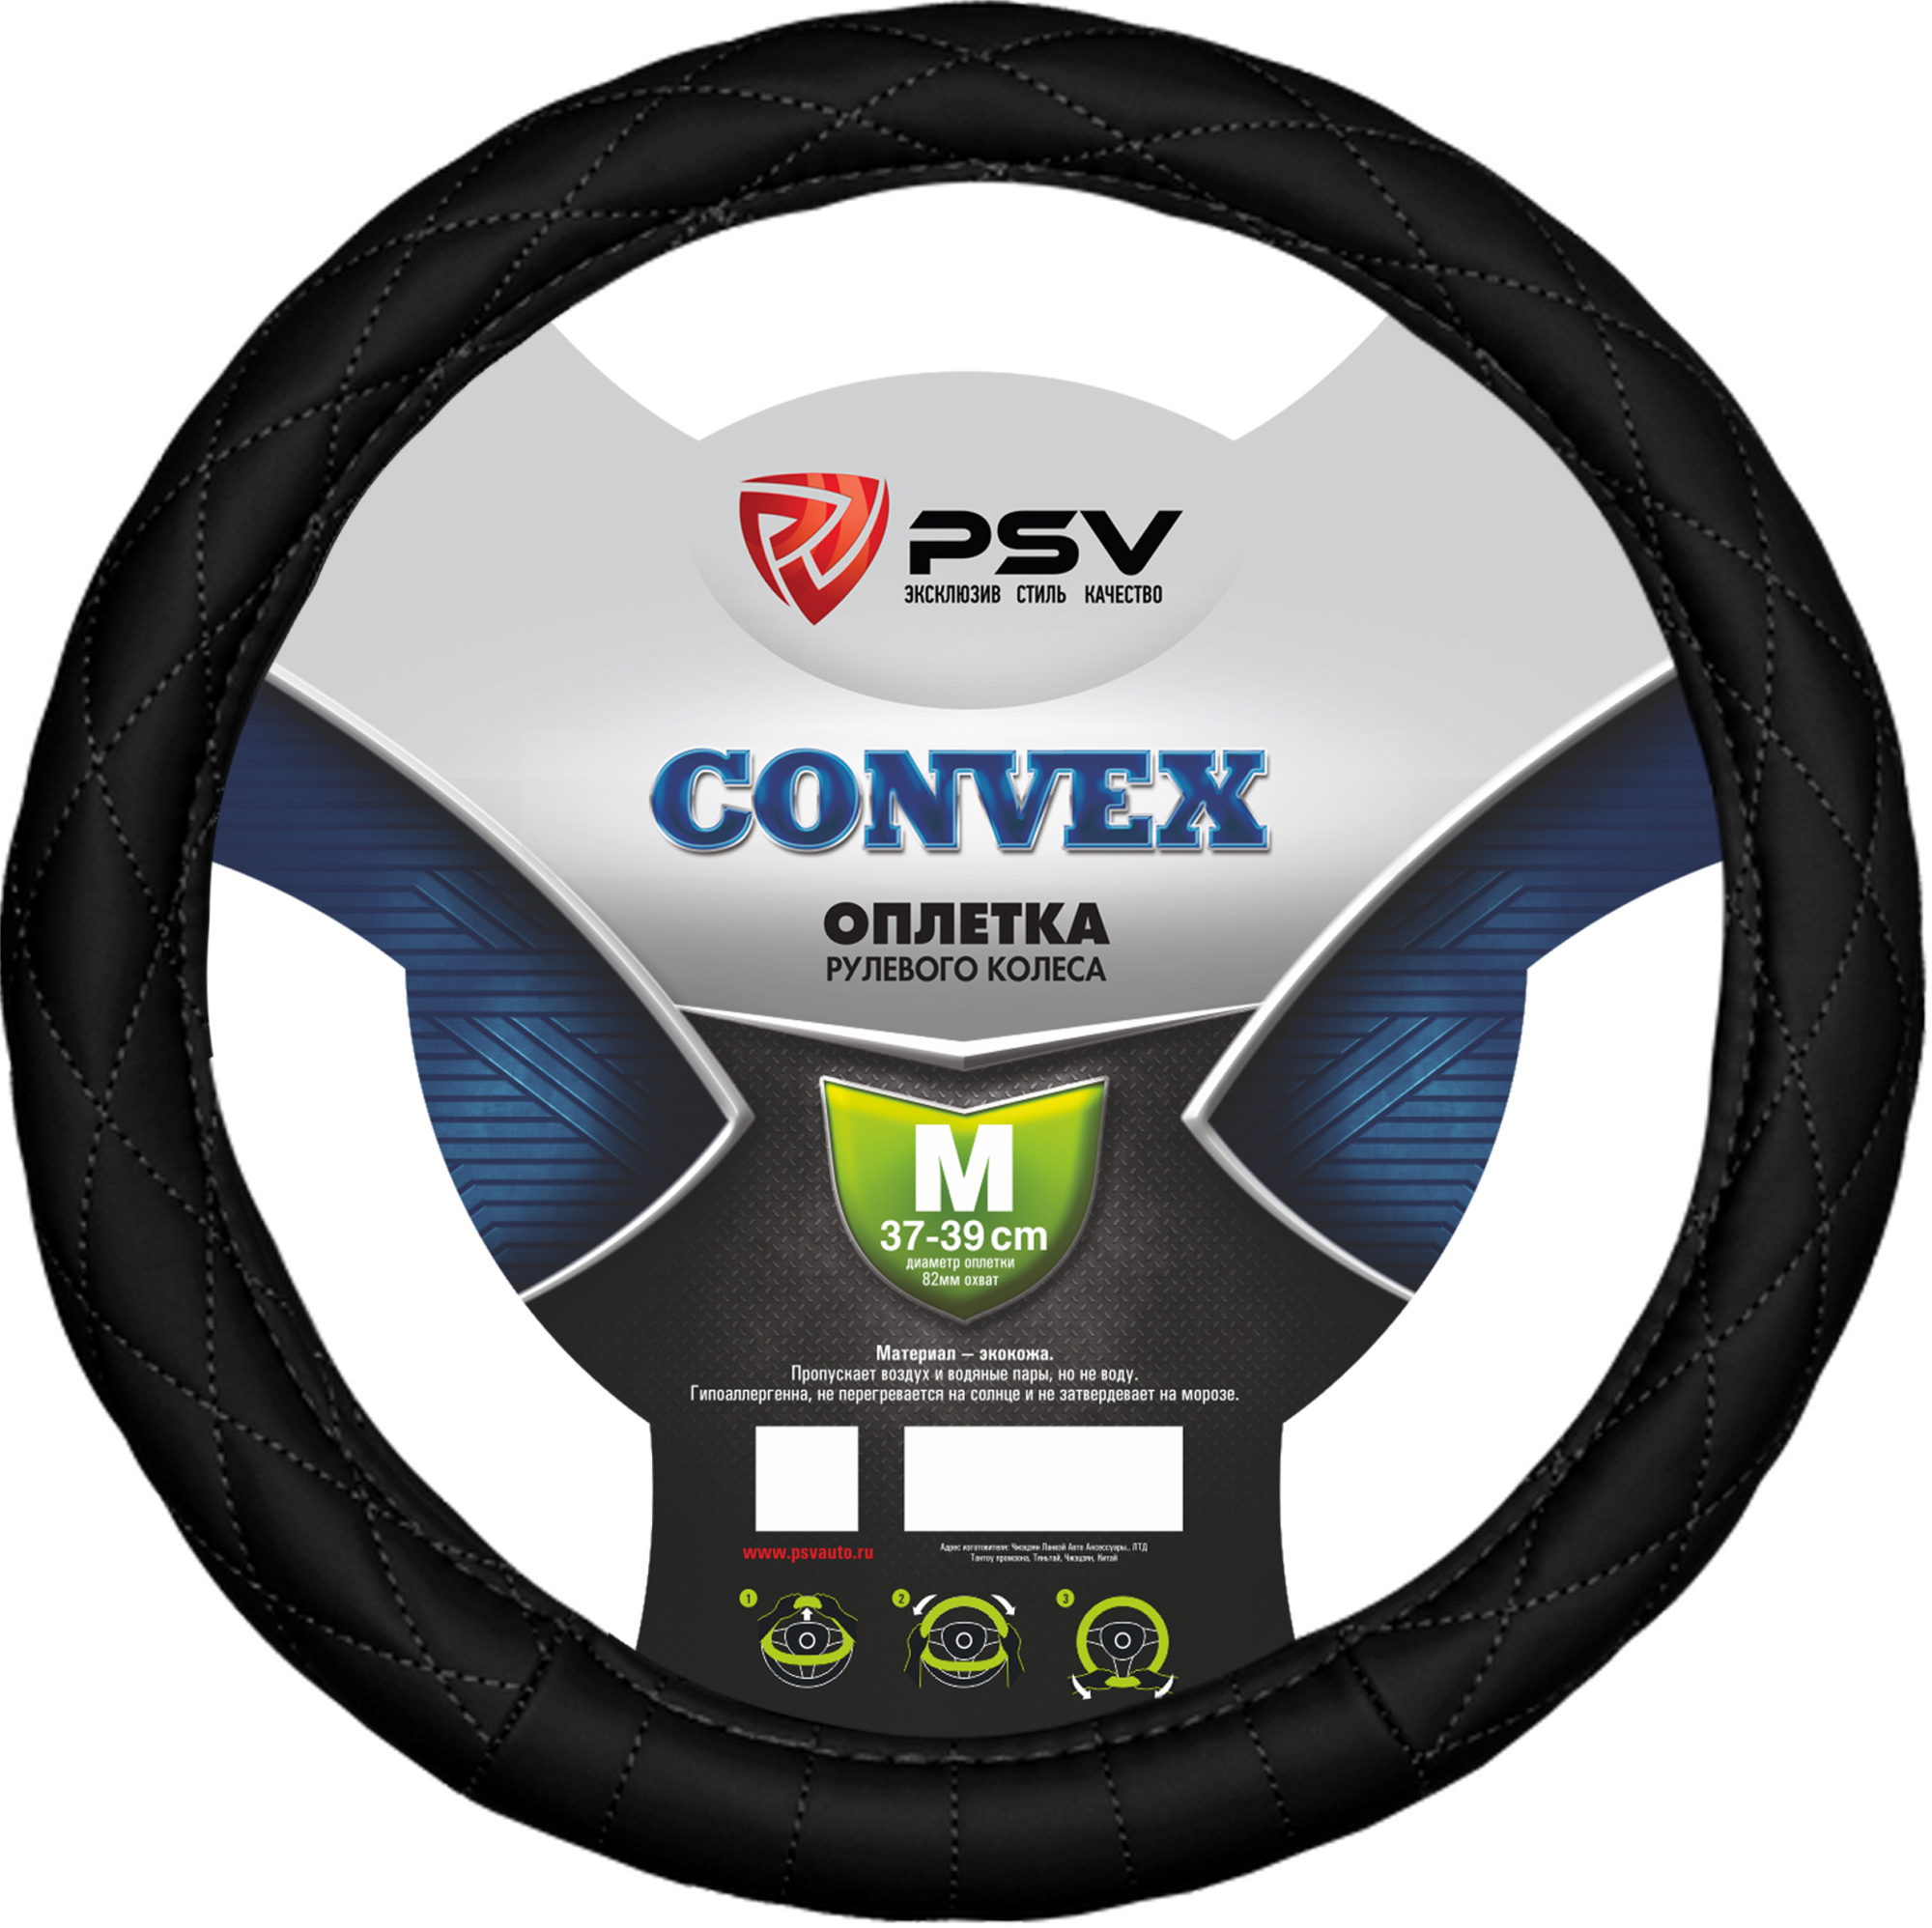 Оплетка PSV "Convex", черная, M